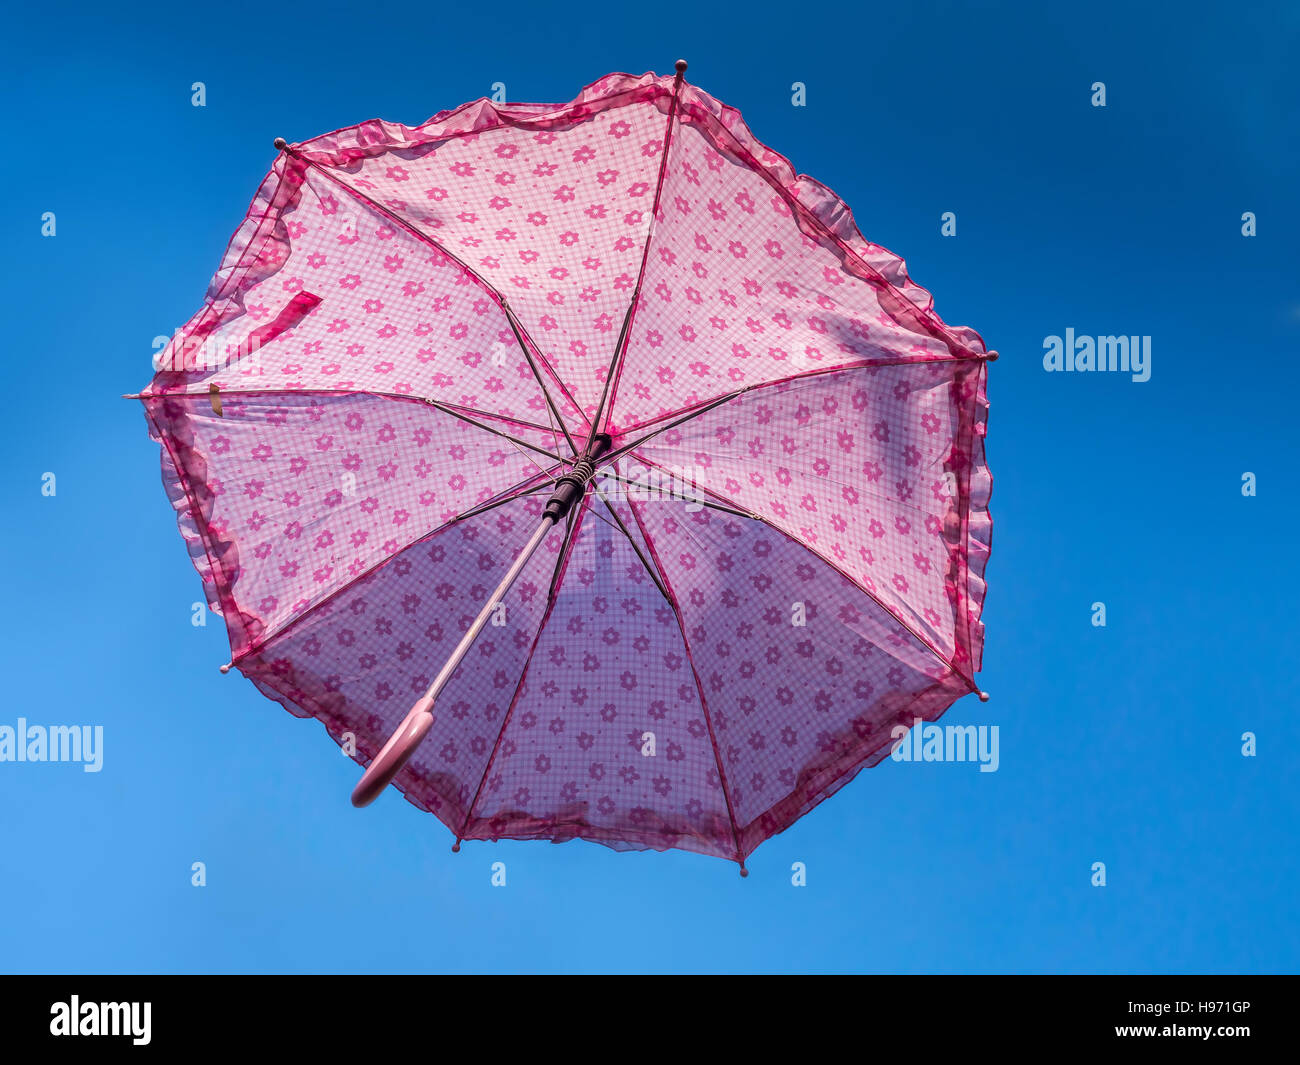 Parapluie Rose s'élève dans le ciel bleu Banque D'Images